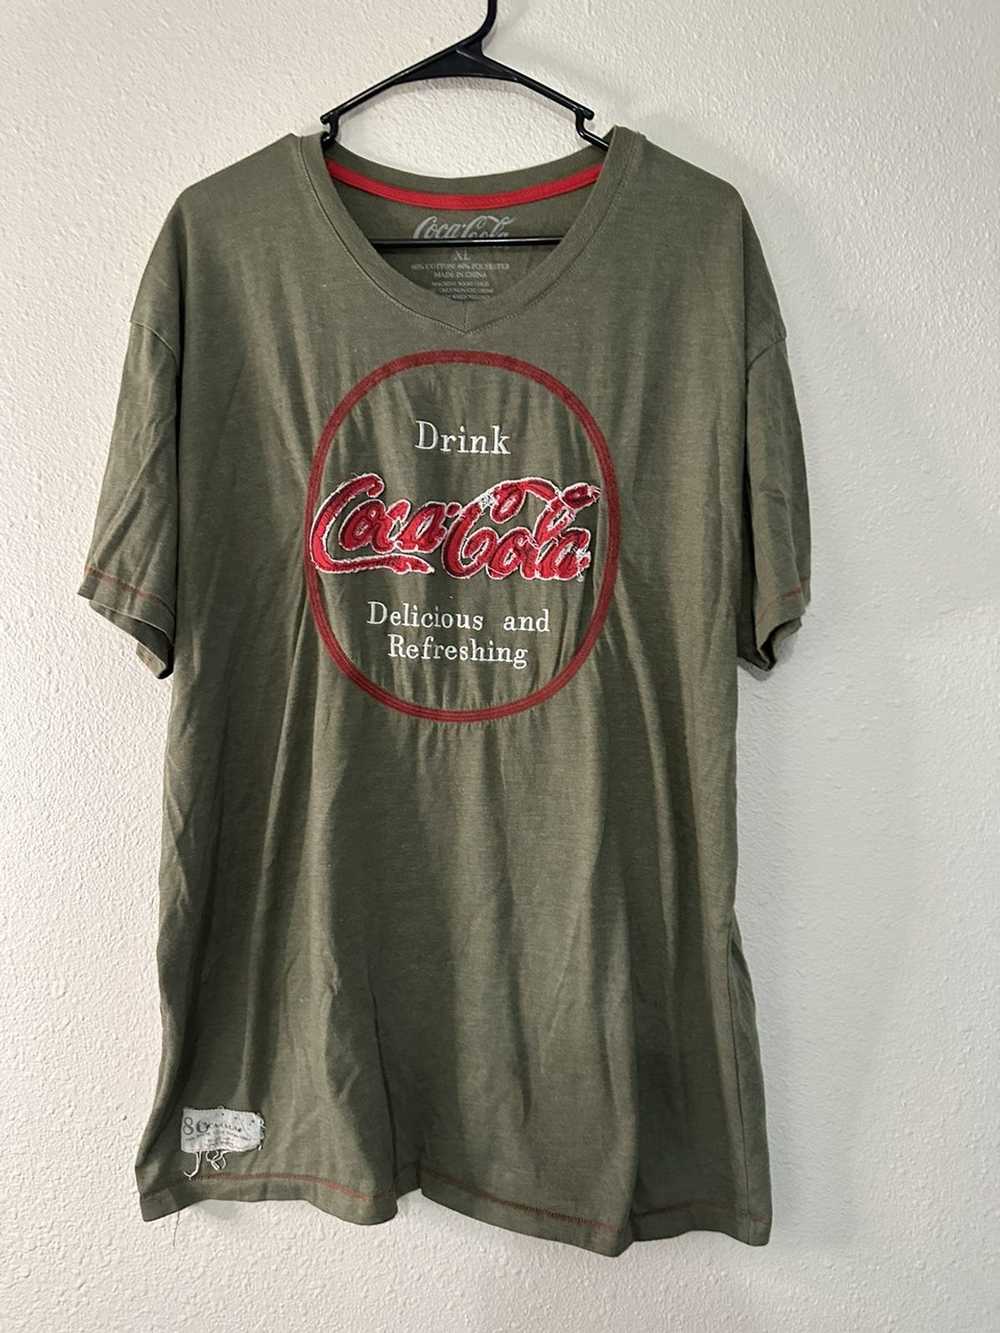 Coca Cola Coca Cola Men’s T-shirt XL - image 1